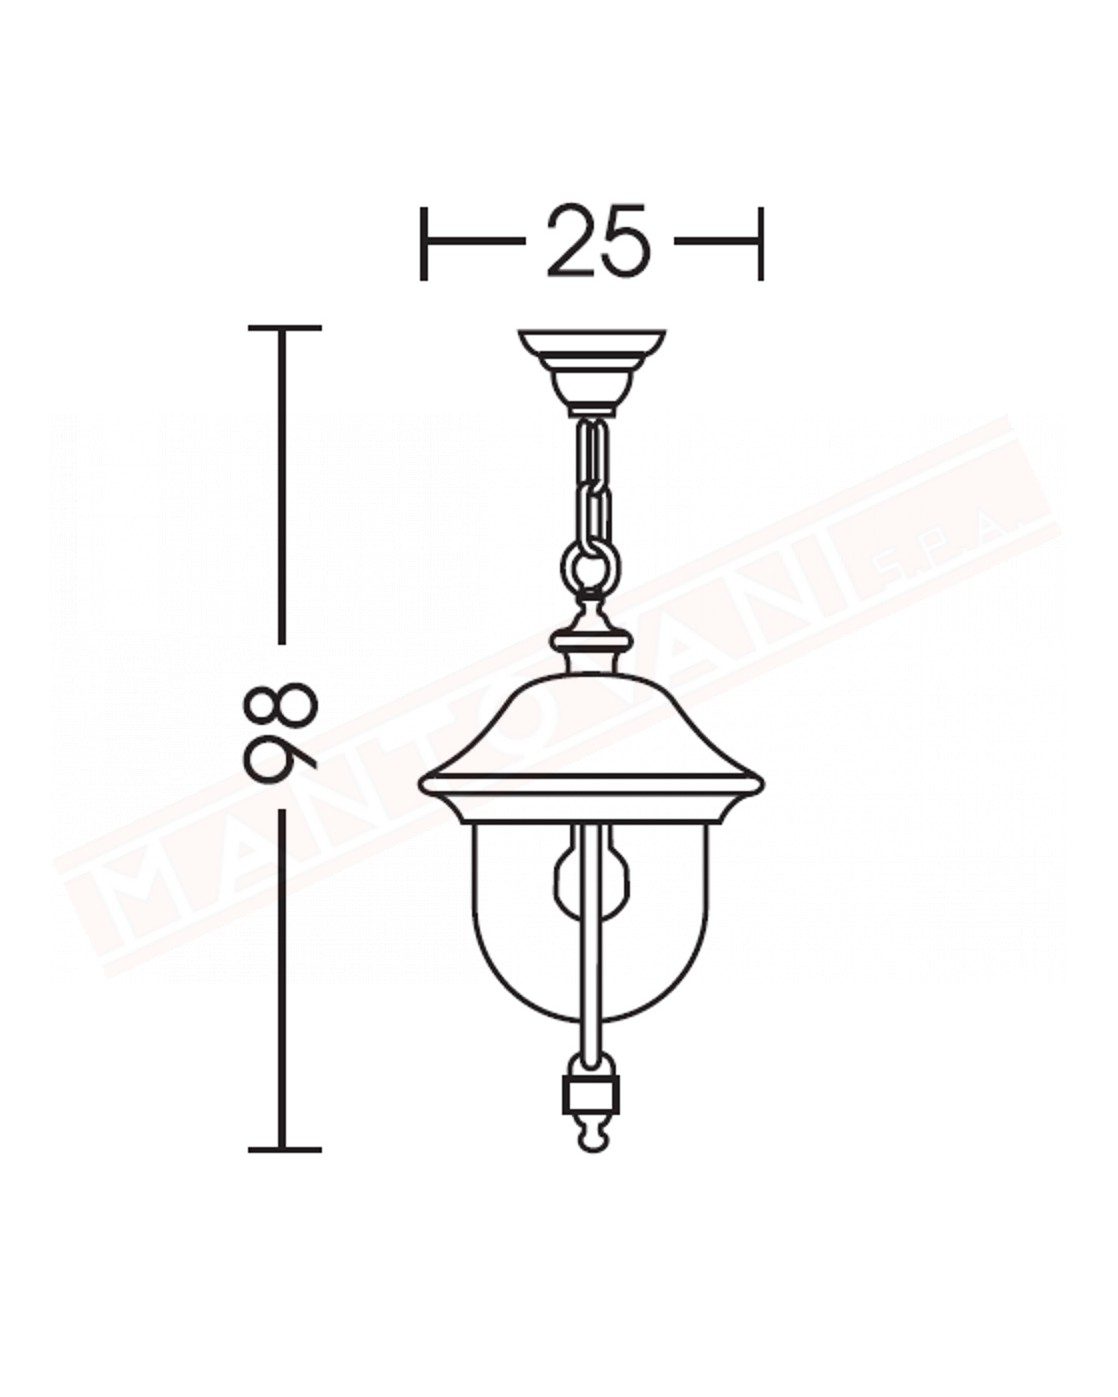 Moretti lampada per esterni a sospensione nera in alluminio pressofuso altezza cm 98 larghezza cm 25 attacco e27